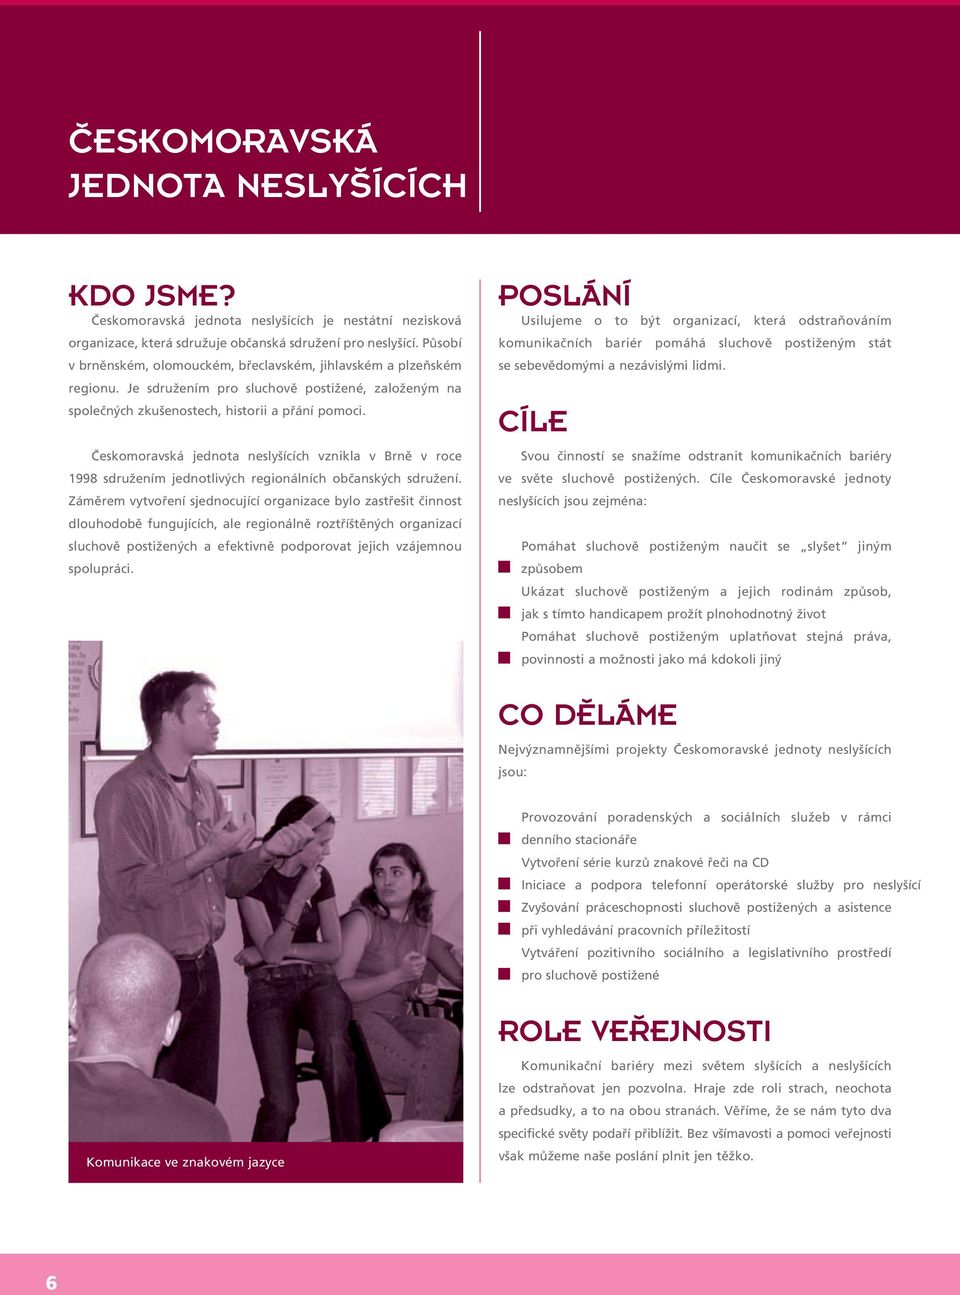 Českomoravská jednota neslyšících vznikla v Brně v roce 1998 sdružením jednotlivých regionálních občanských sdružení.